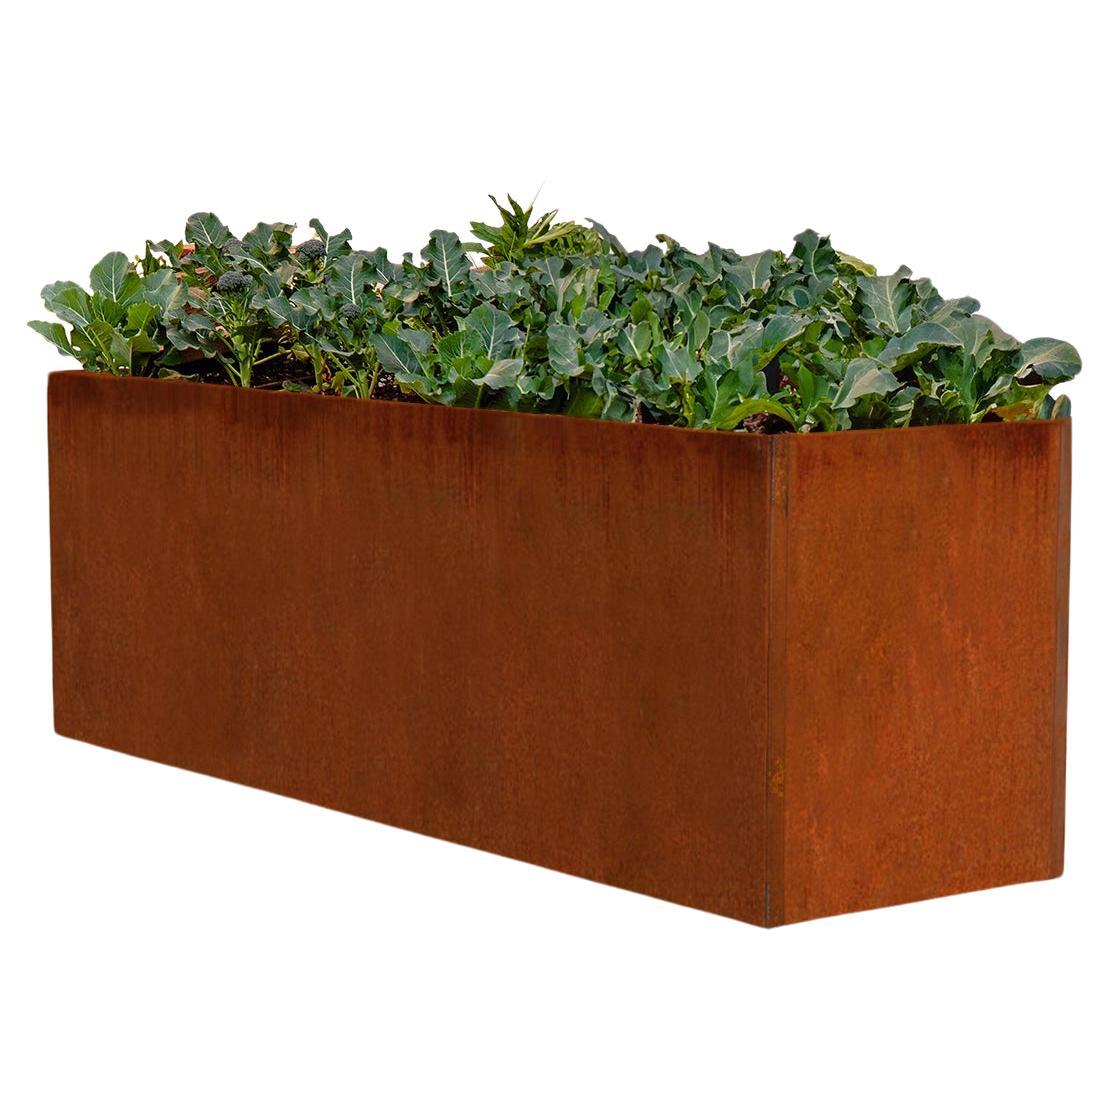 Corten Steel Planter or Edible Garden Box (5' X 2' X 2.5')